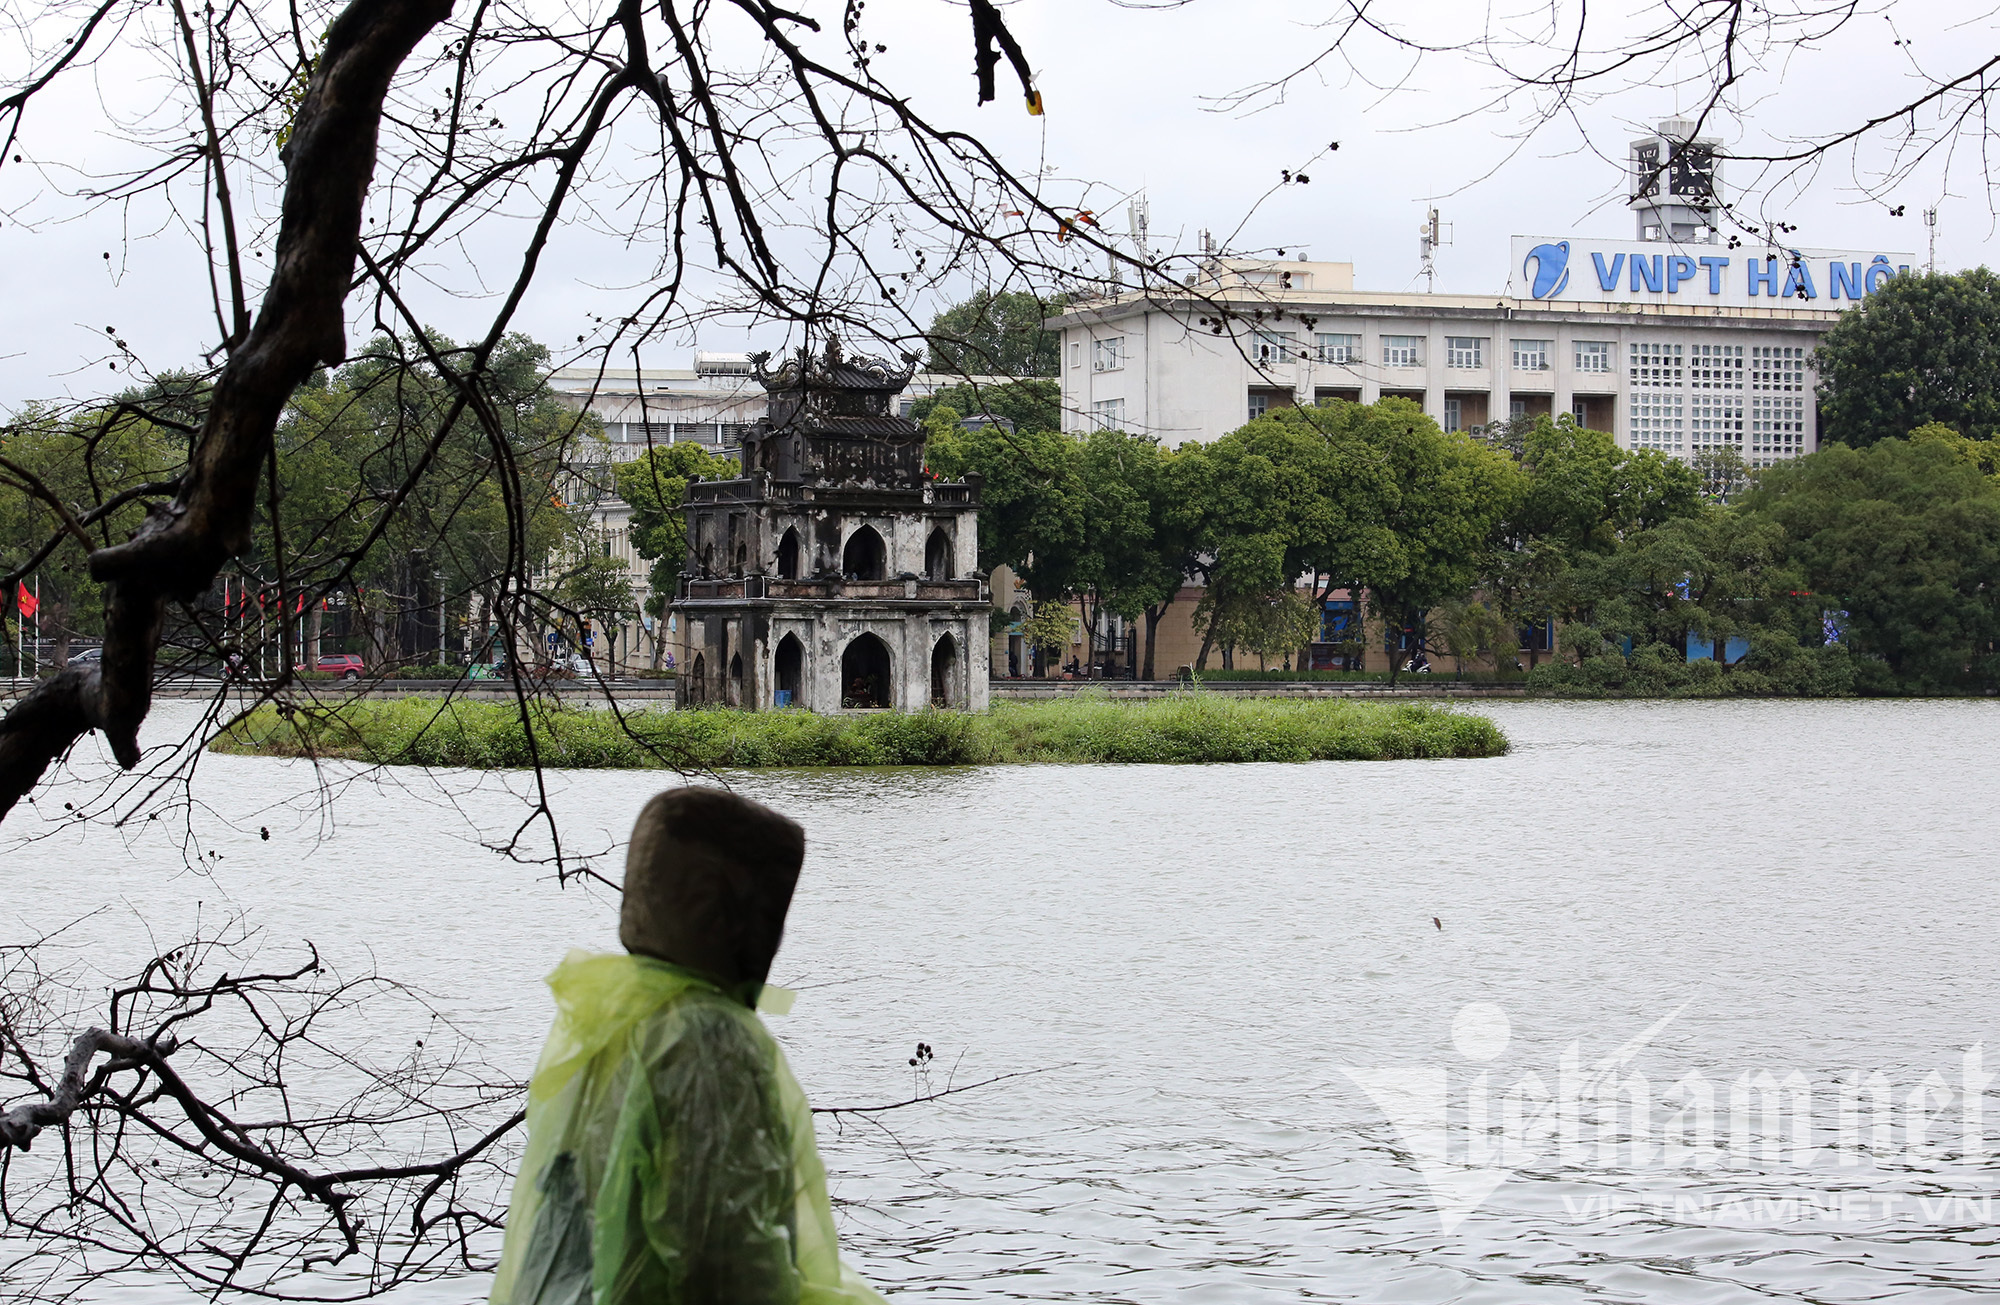 Mưa rét buốt ở Hà Nội, cần thủ vẫn dầm mình ở hồ Gươm - Ảnh 8.